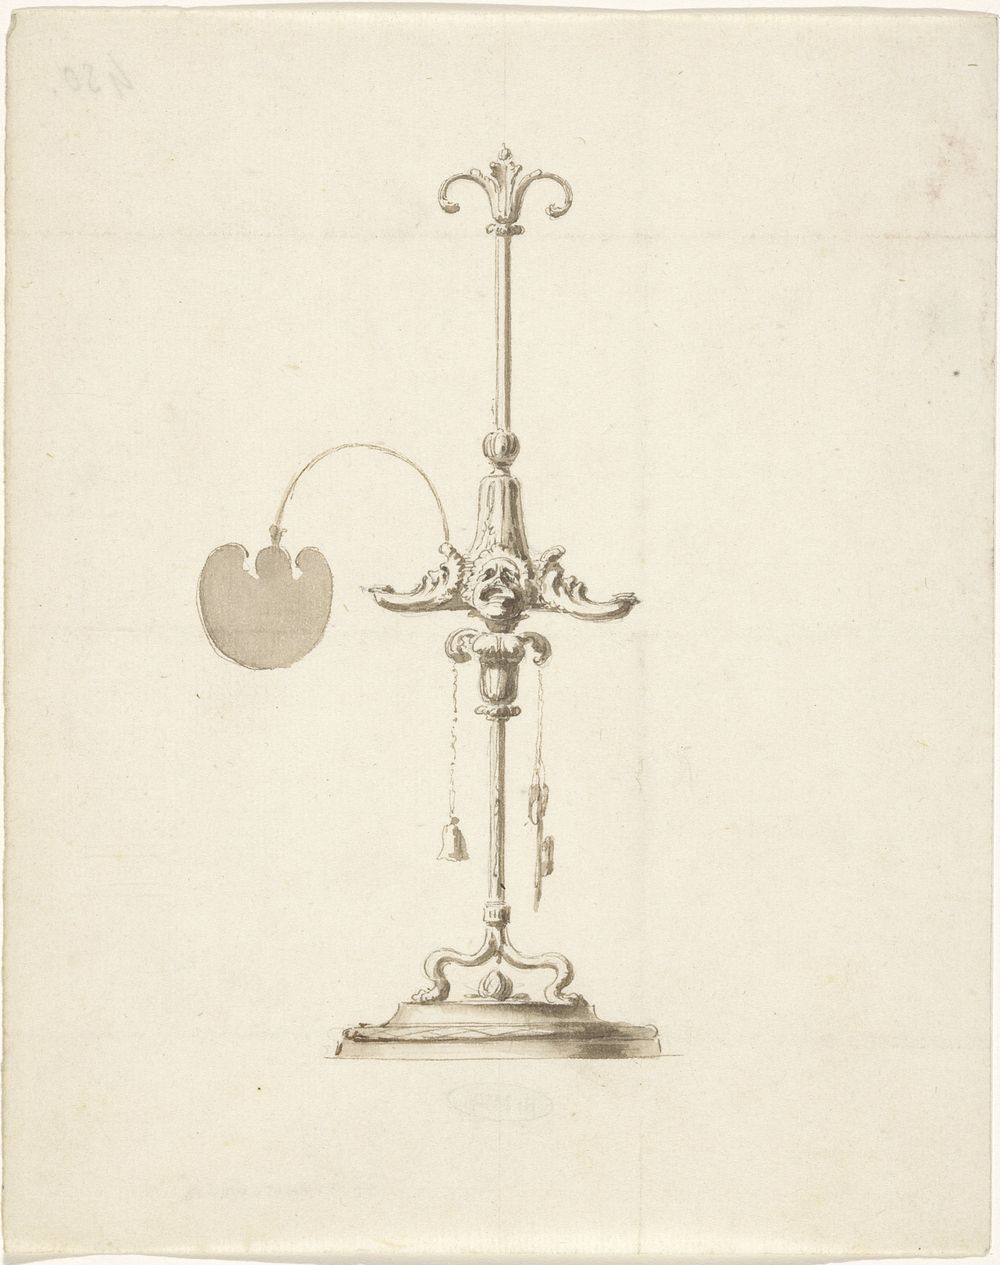 Ontwerp voor een olielamp met branders in de vorm van antieke maskers (c. 1765 - c. 1775) by Luigi Valadier